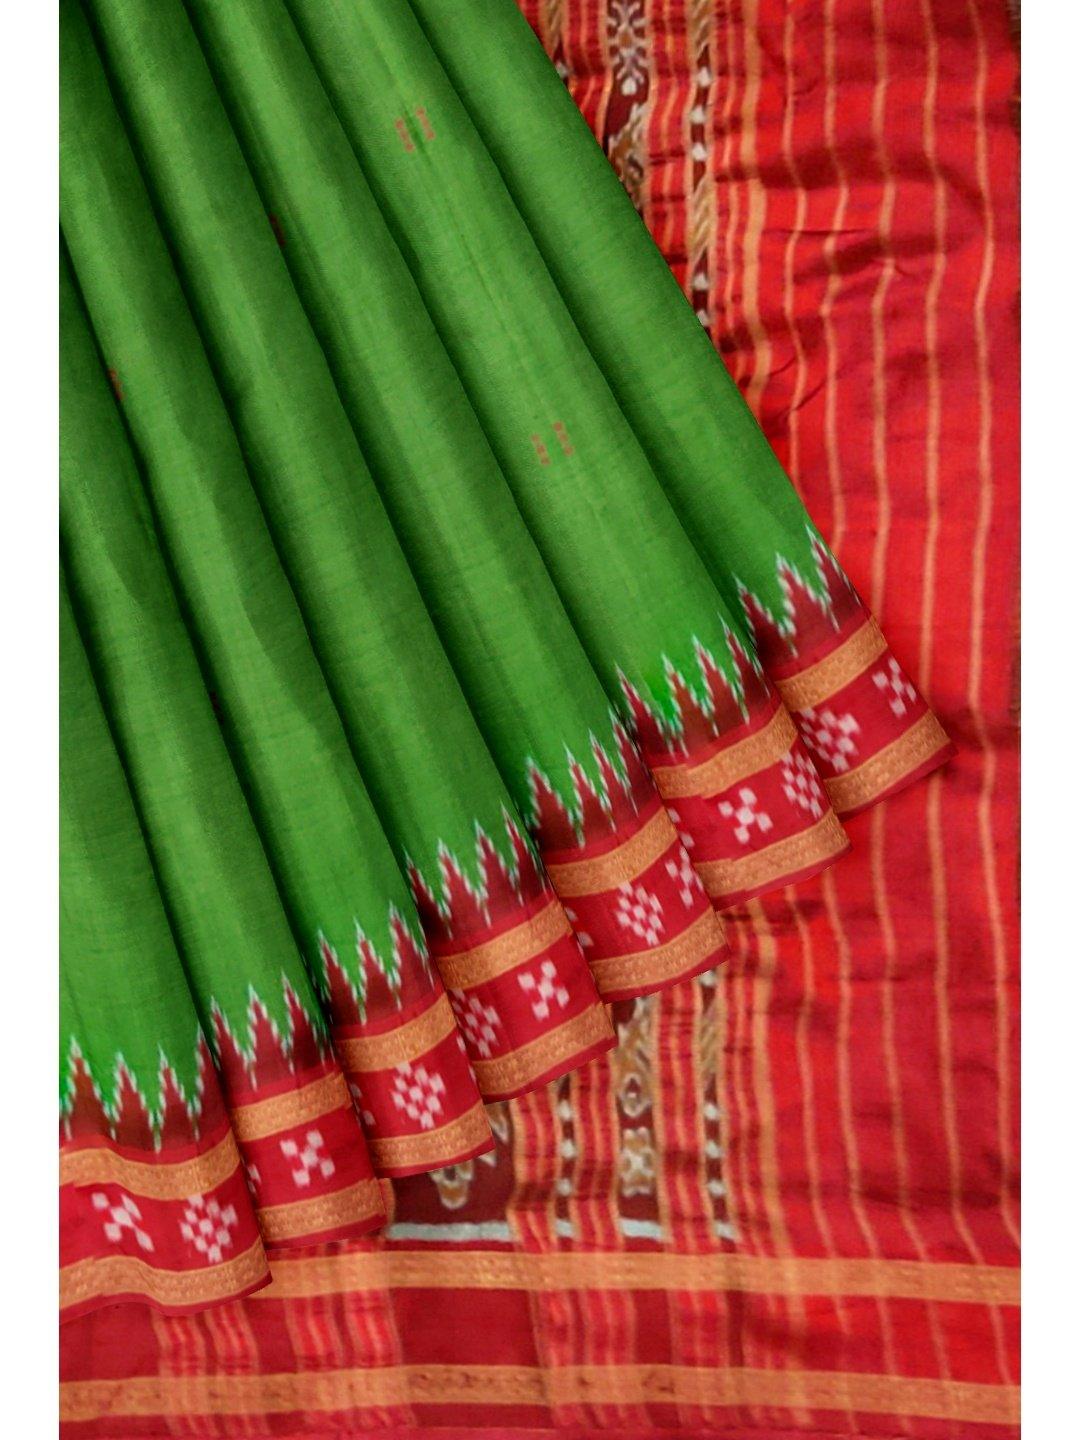 OliveGreen Odisha Khandua Sambalpuri Silk Saree - Crafts Collection